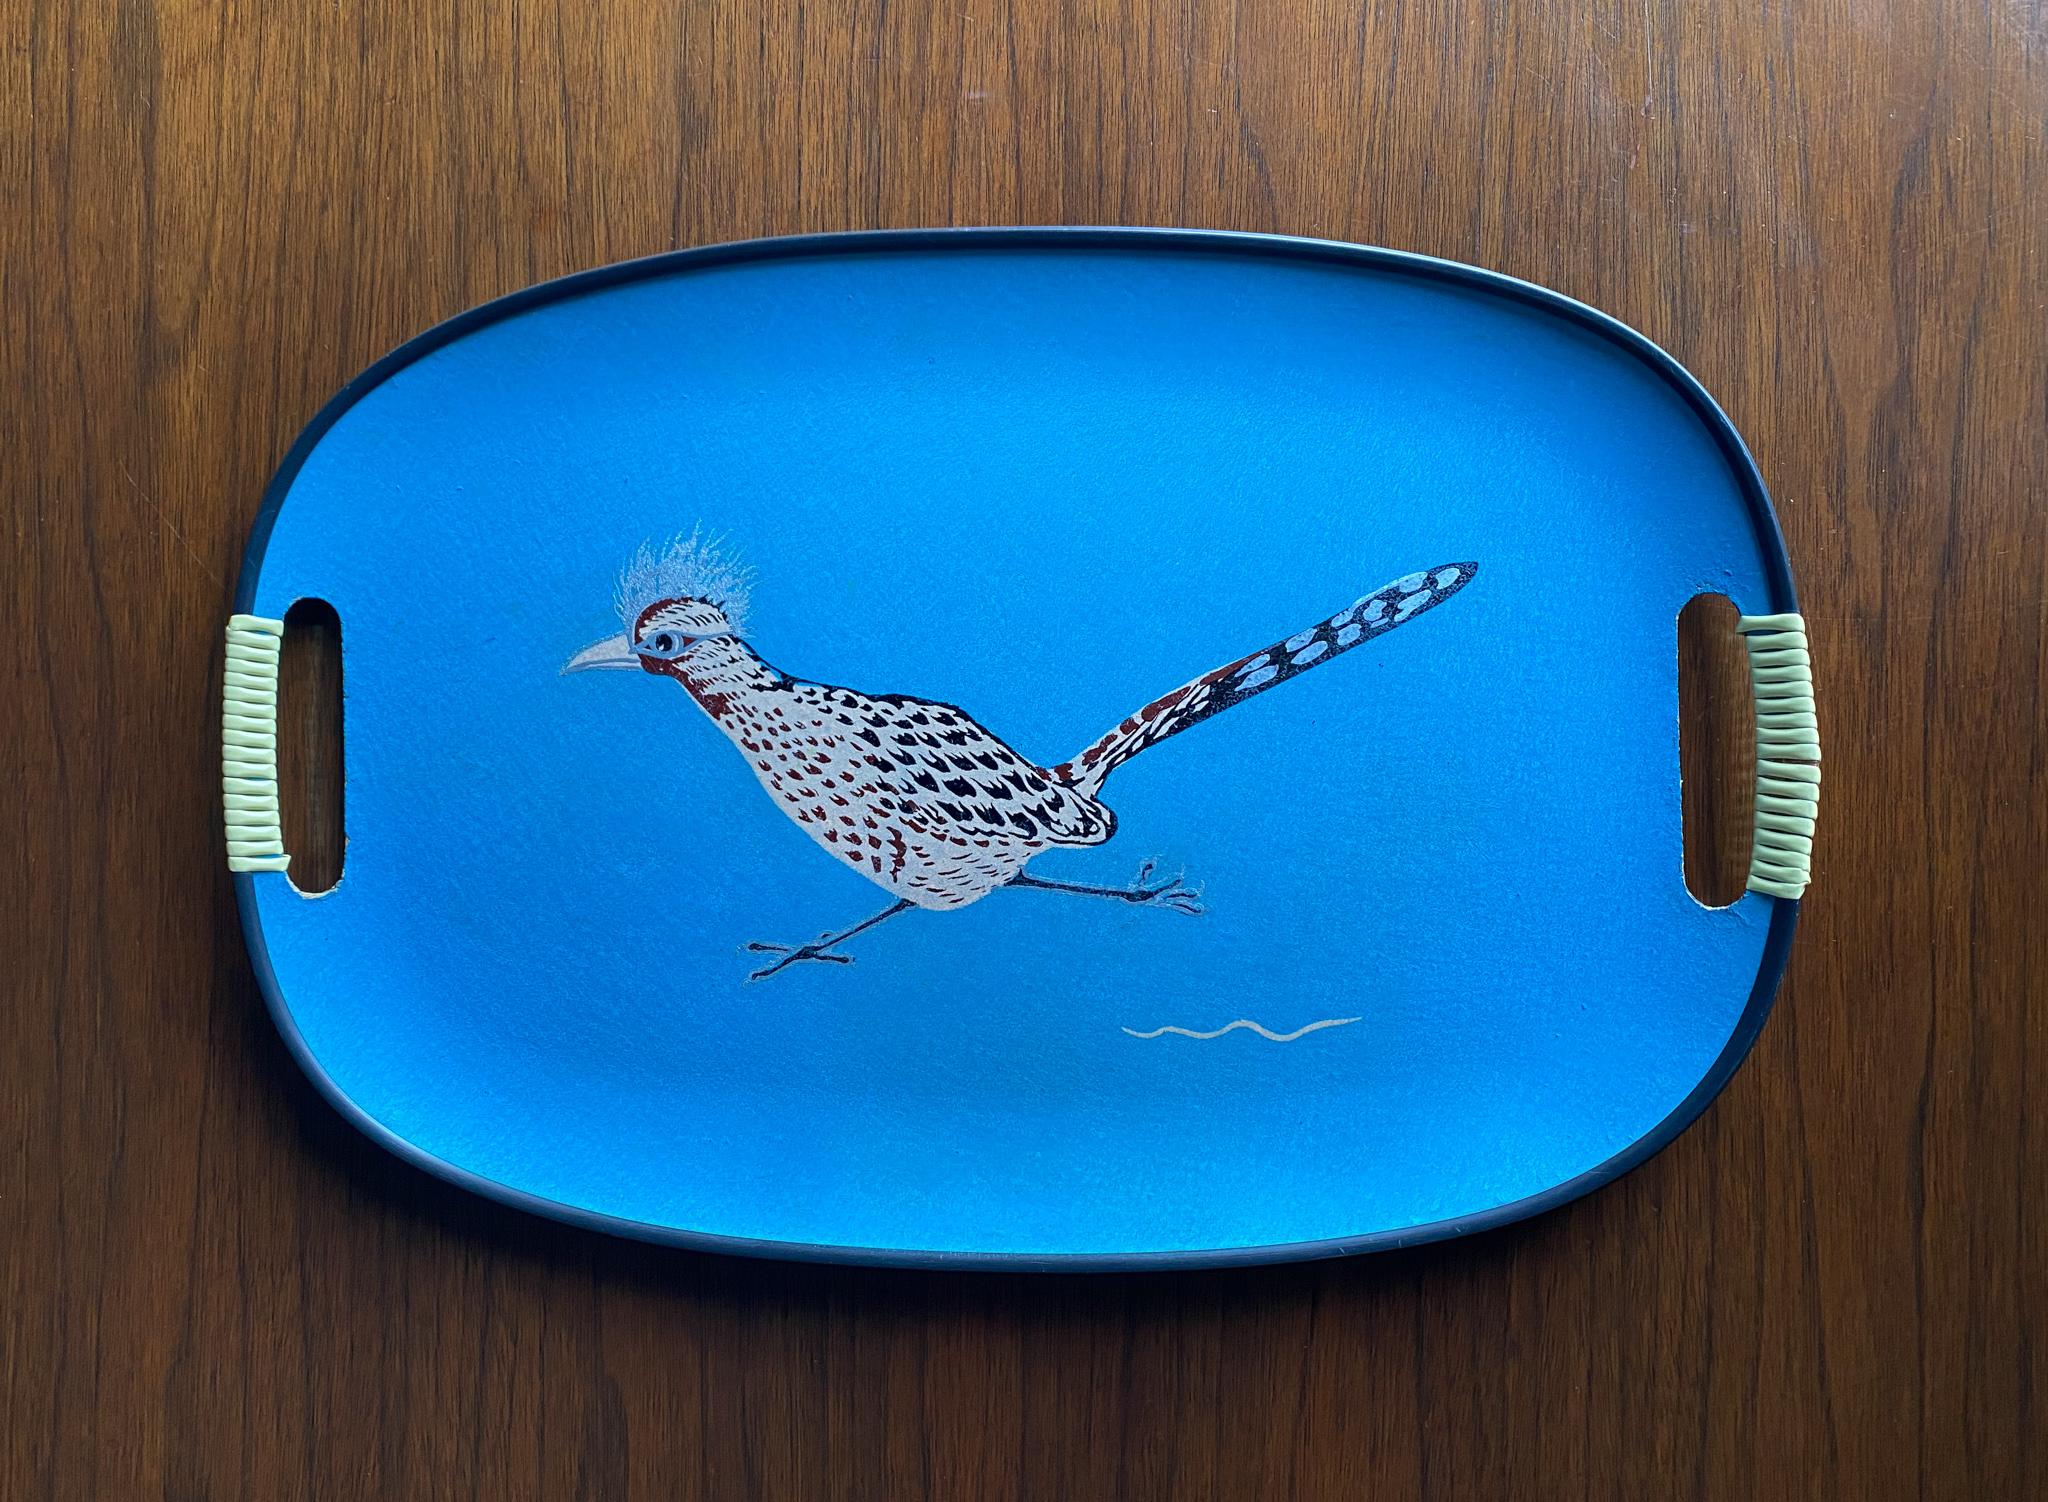 Mid century blue Roadrunner bird serving tray, circa 1960.